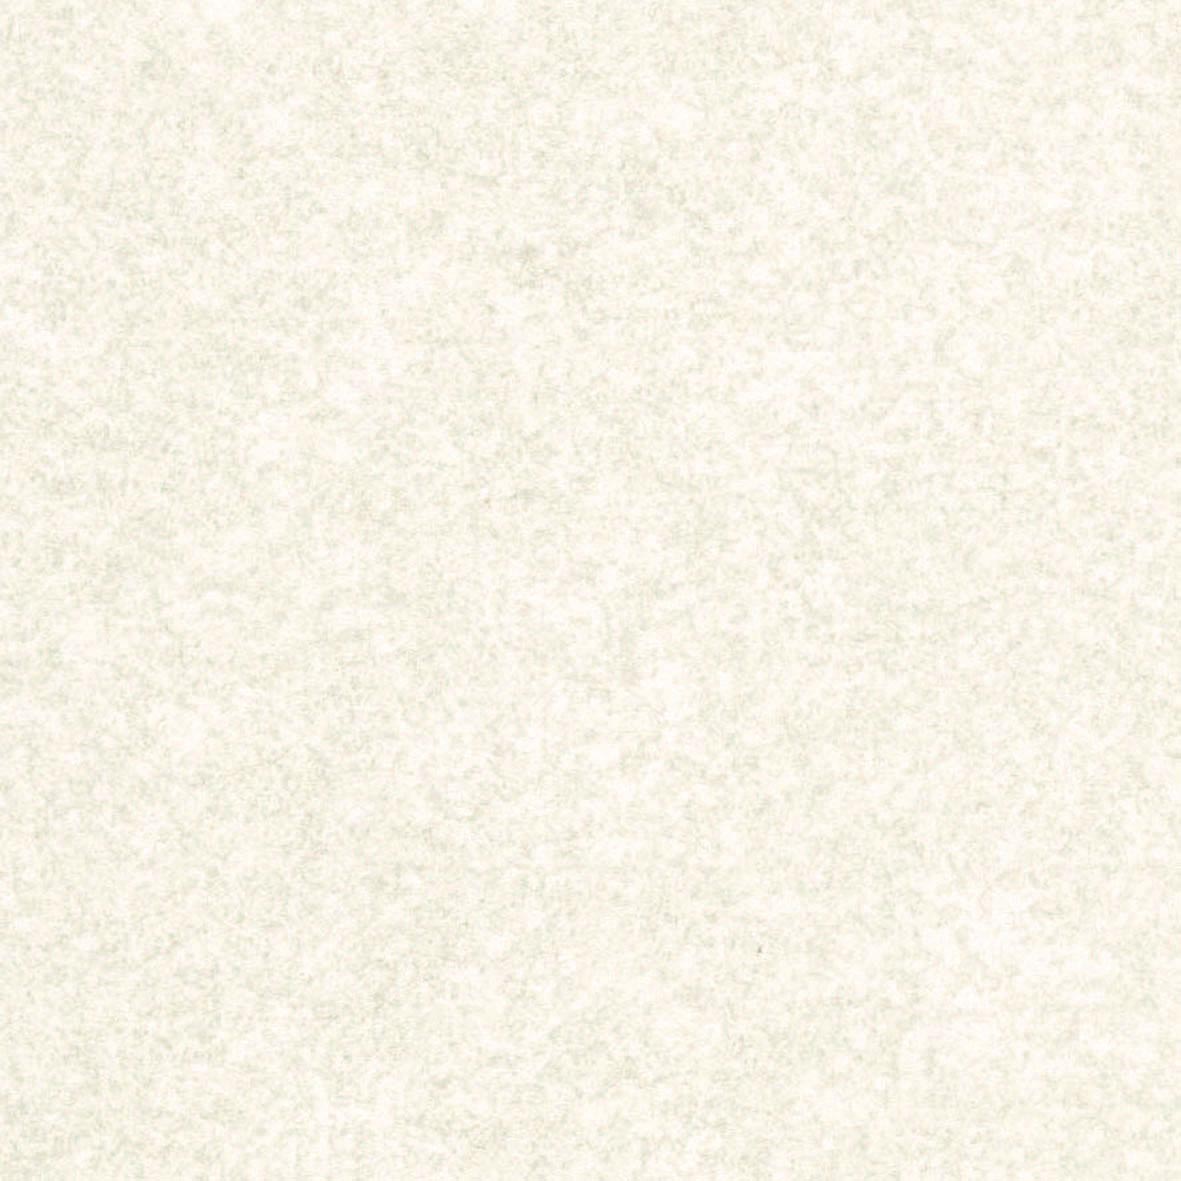 【のり無し】 LW-523 リリカラ 壁紙/クロス リリカラ 【のり無し】壁紙/クロス